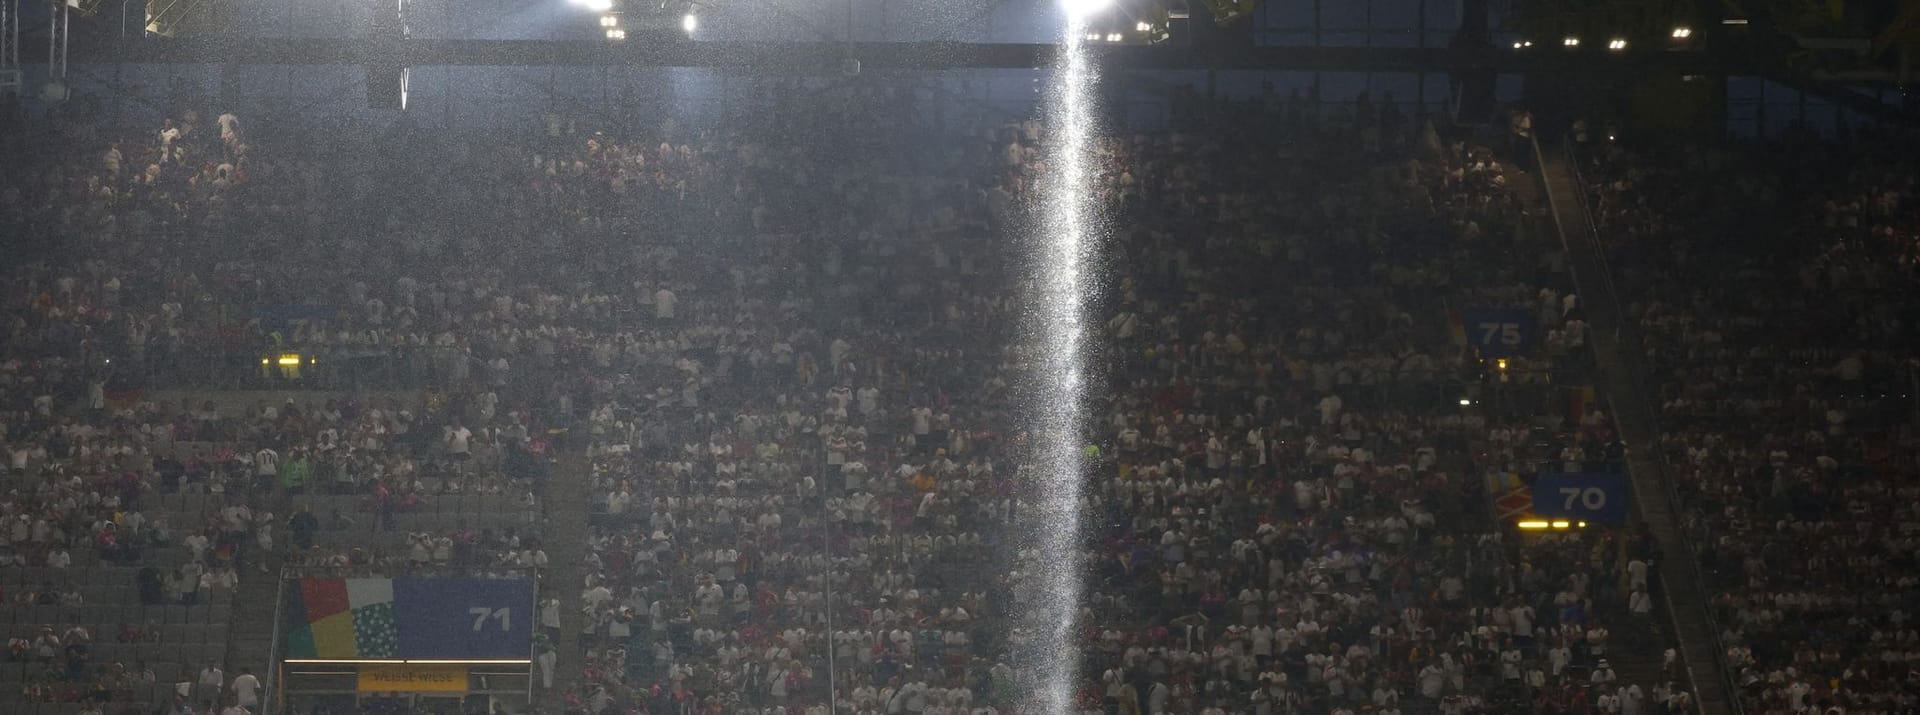 Ein Wasserfall im Stadion.